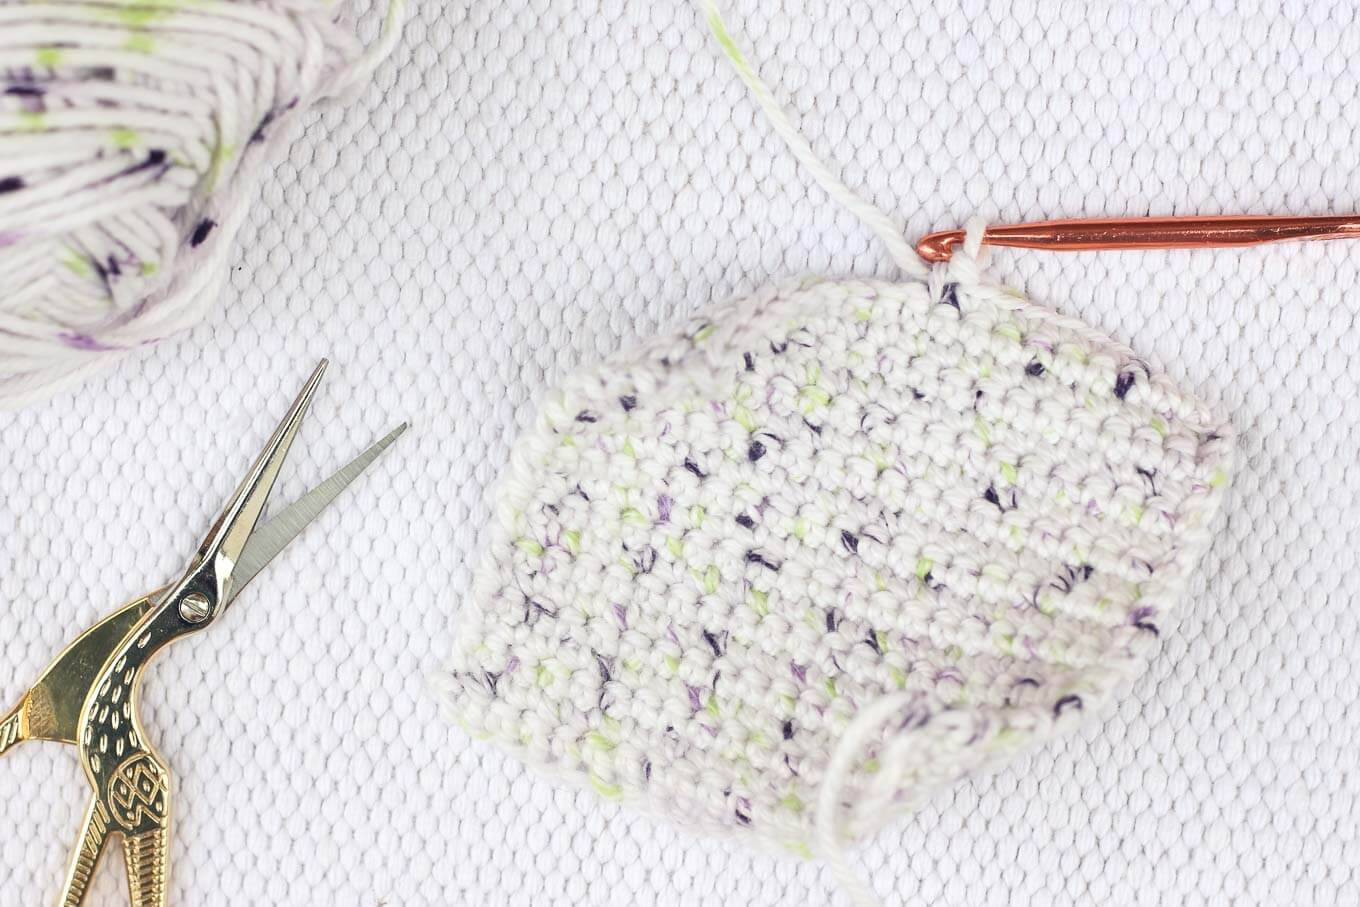 Knitted Sachet Pattern Crochet Dried Lavender Sachet Free Pattern Make Do Crew